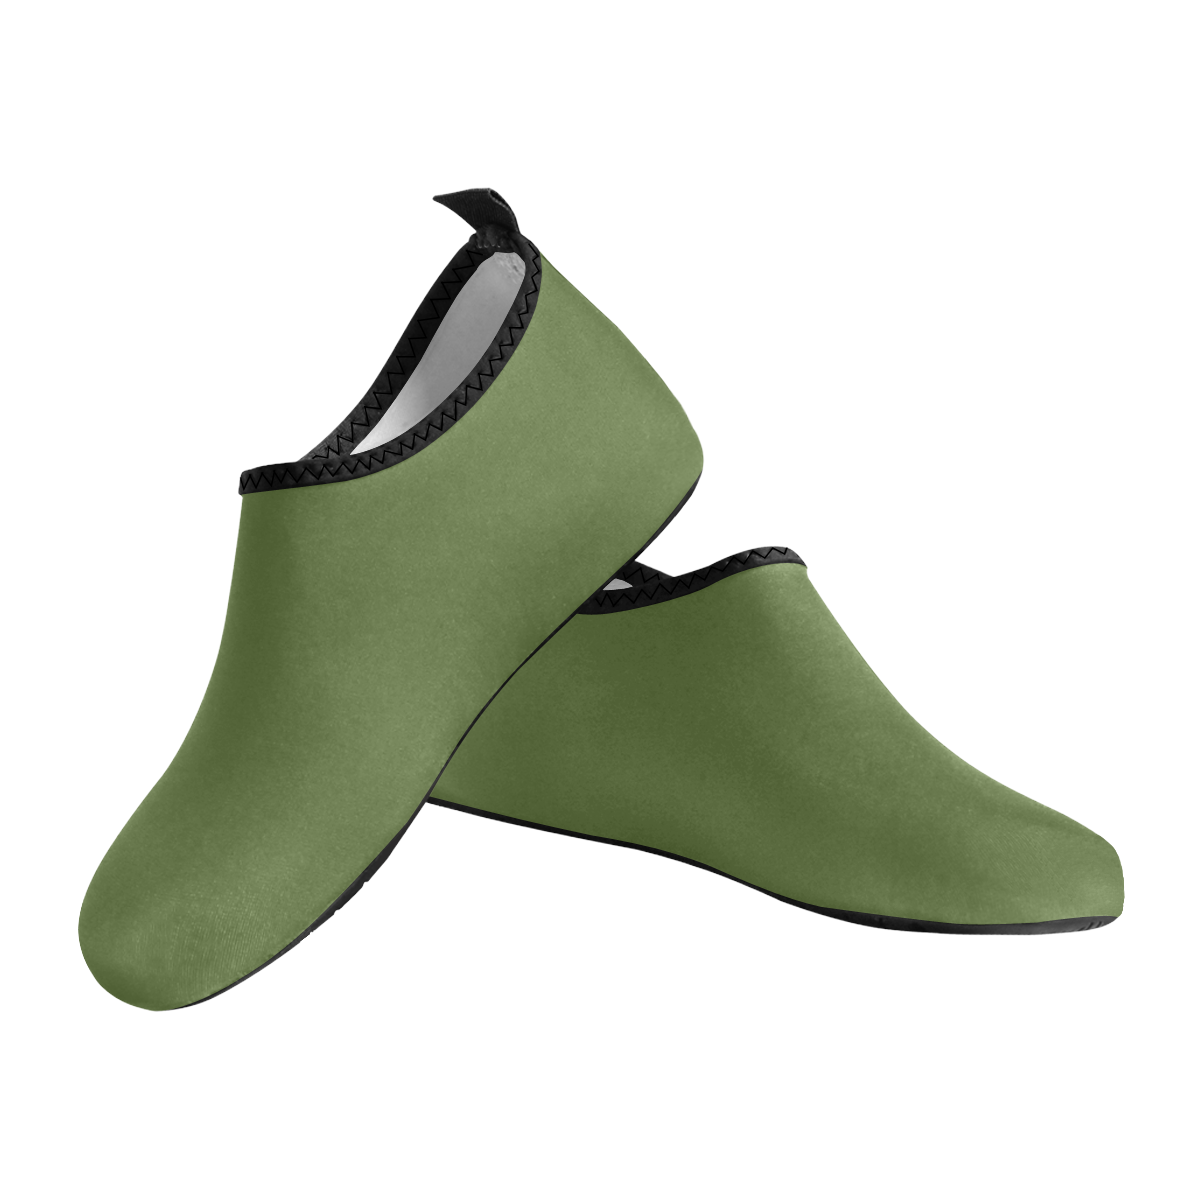 color dark olive green Men's Slip-On Water Shoes (Model 056)